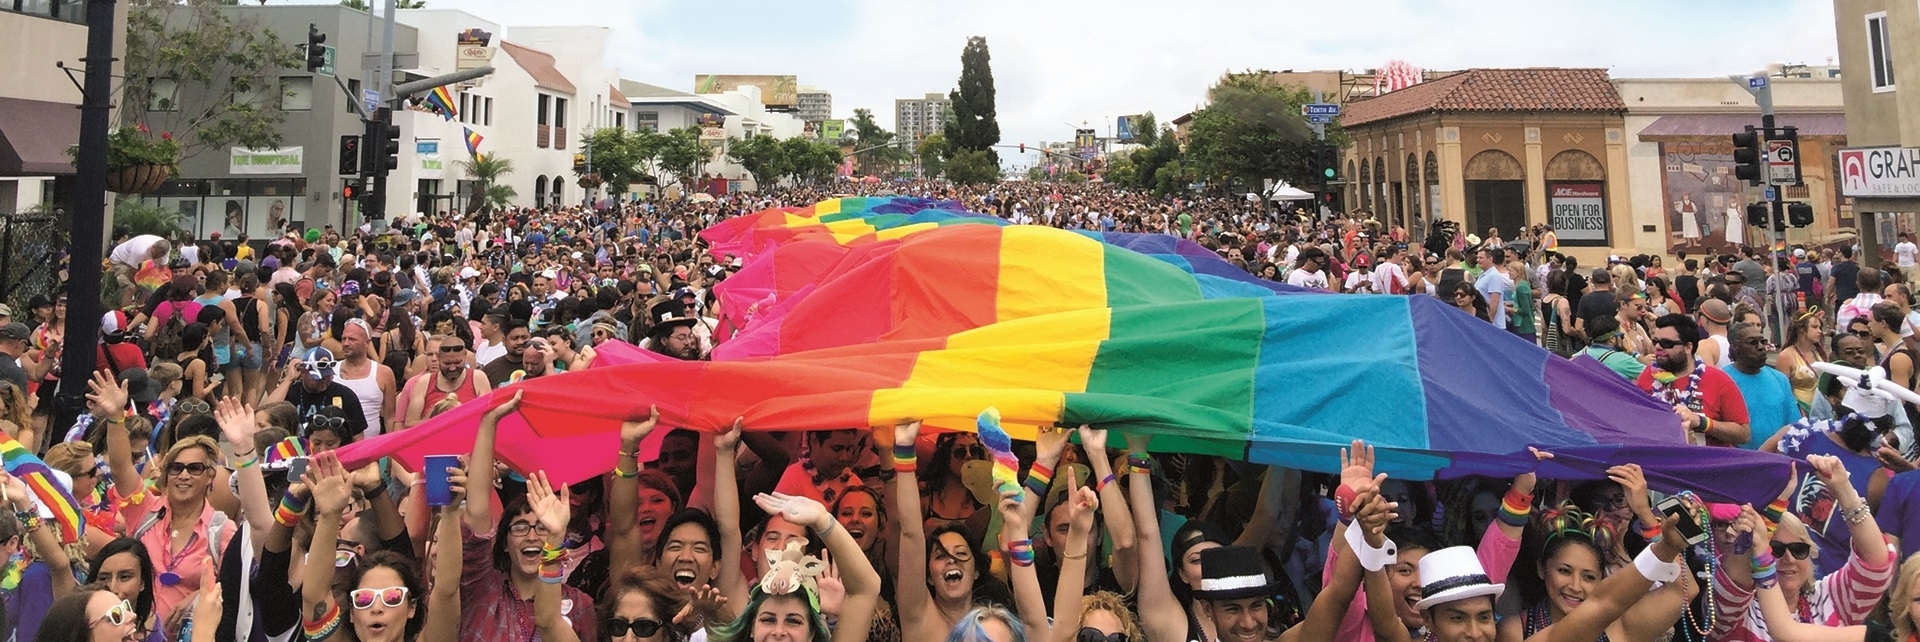 Parada gay San Diego